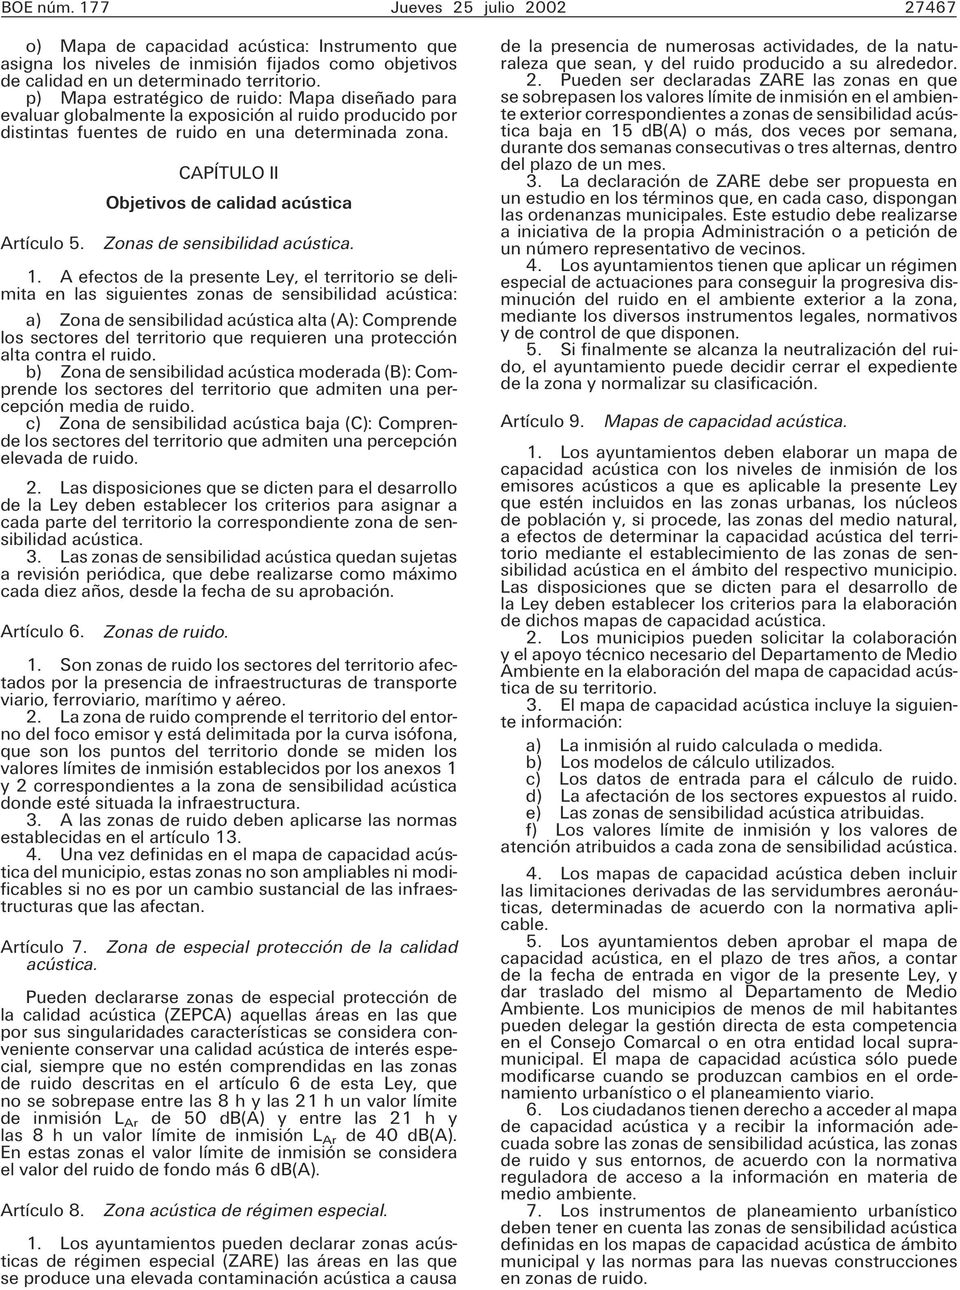 CAPÍTULO II Objetivos de calidad acústica Artículo 5. Zonas de sensibilidad acústica. 1.